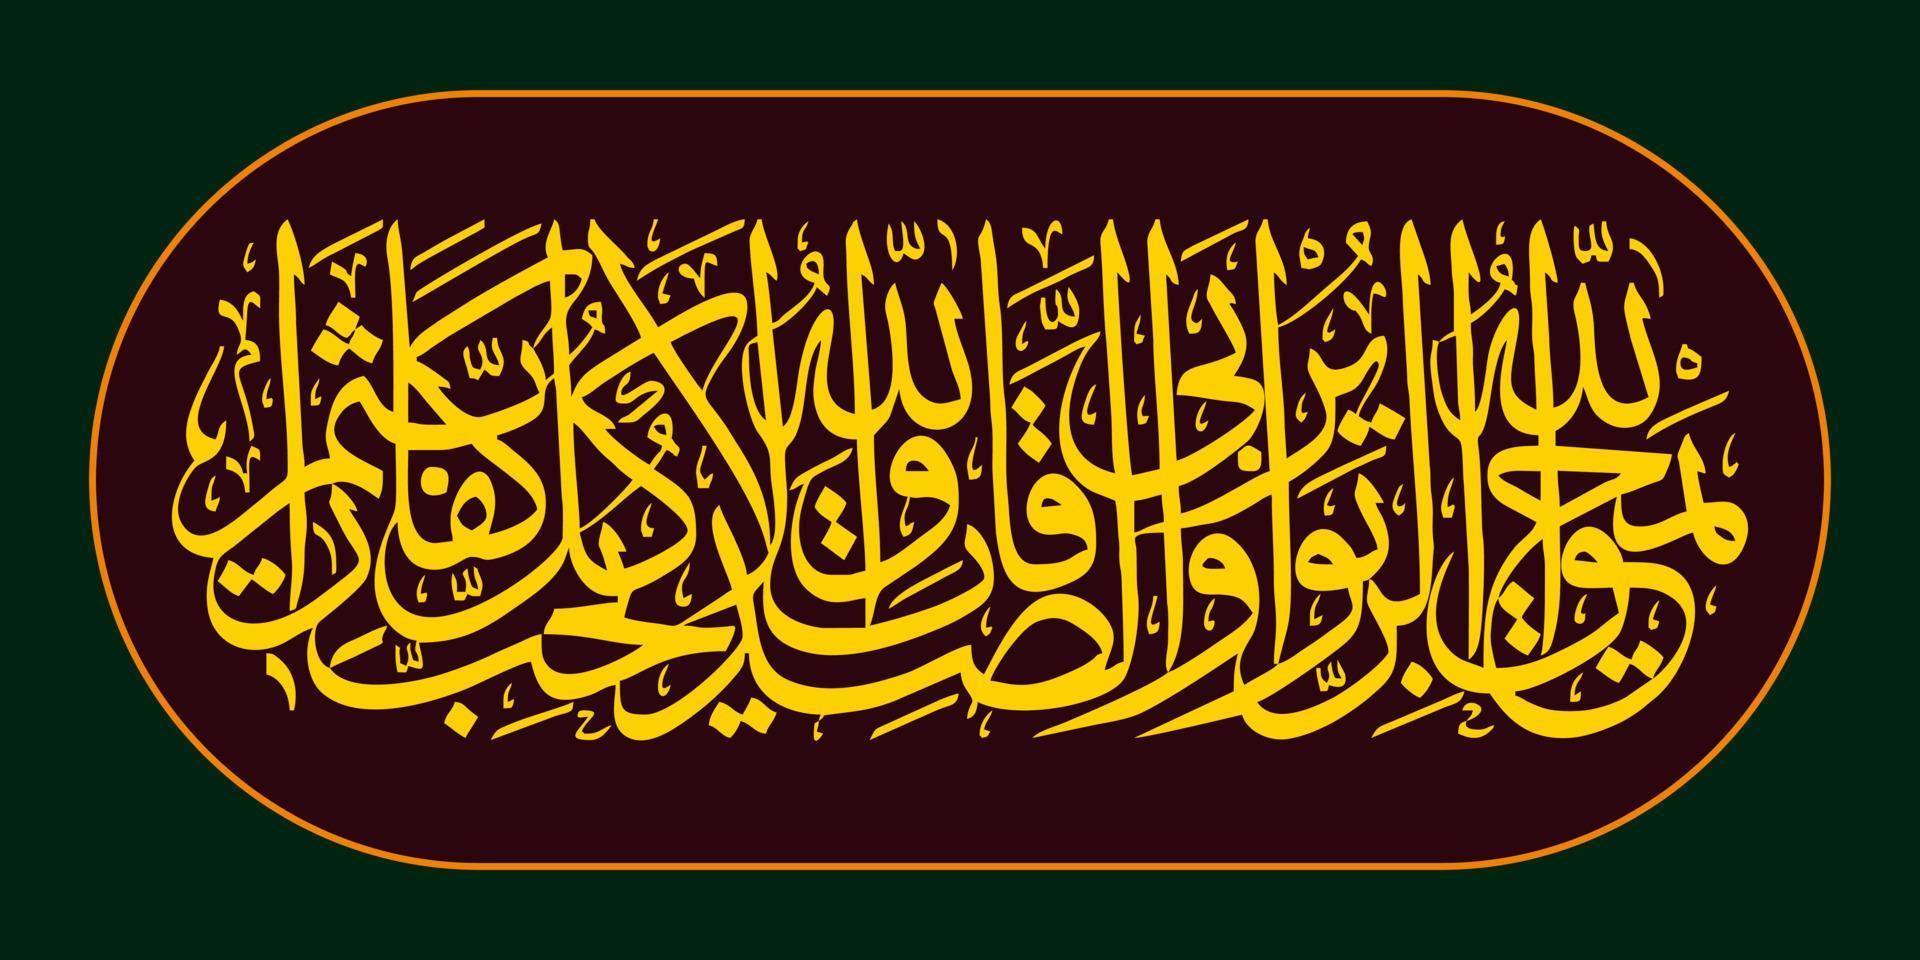 arabicum kalligrafi quran surah al baqarah vers 276, översättning allah förstör ocker och ger näring allmosa. allah gör inte tycka om alla vem resterna i misstro och vältra sig i synd. vektor